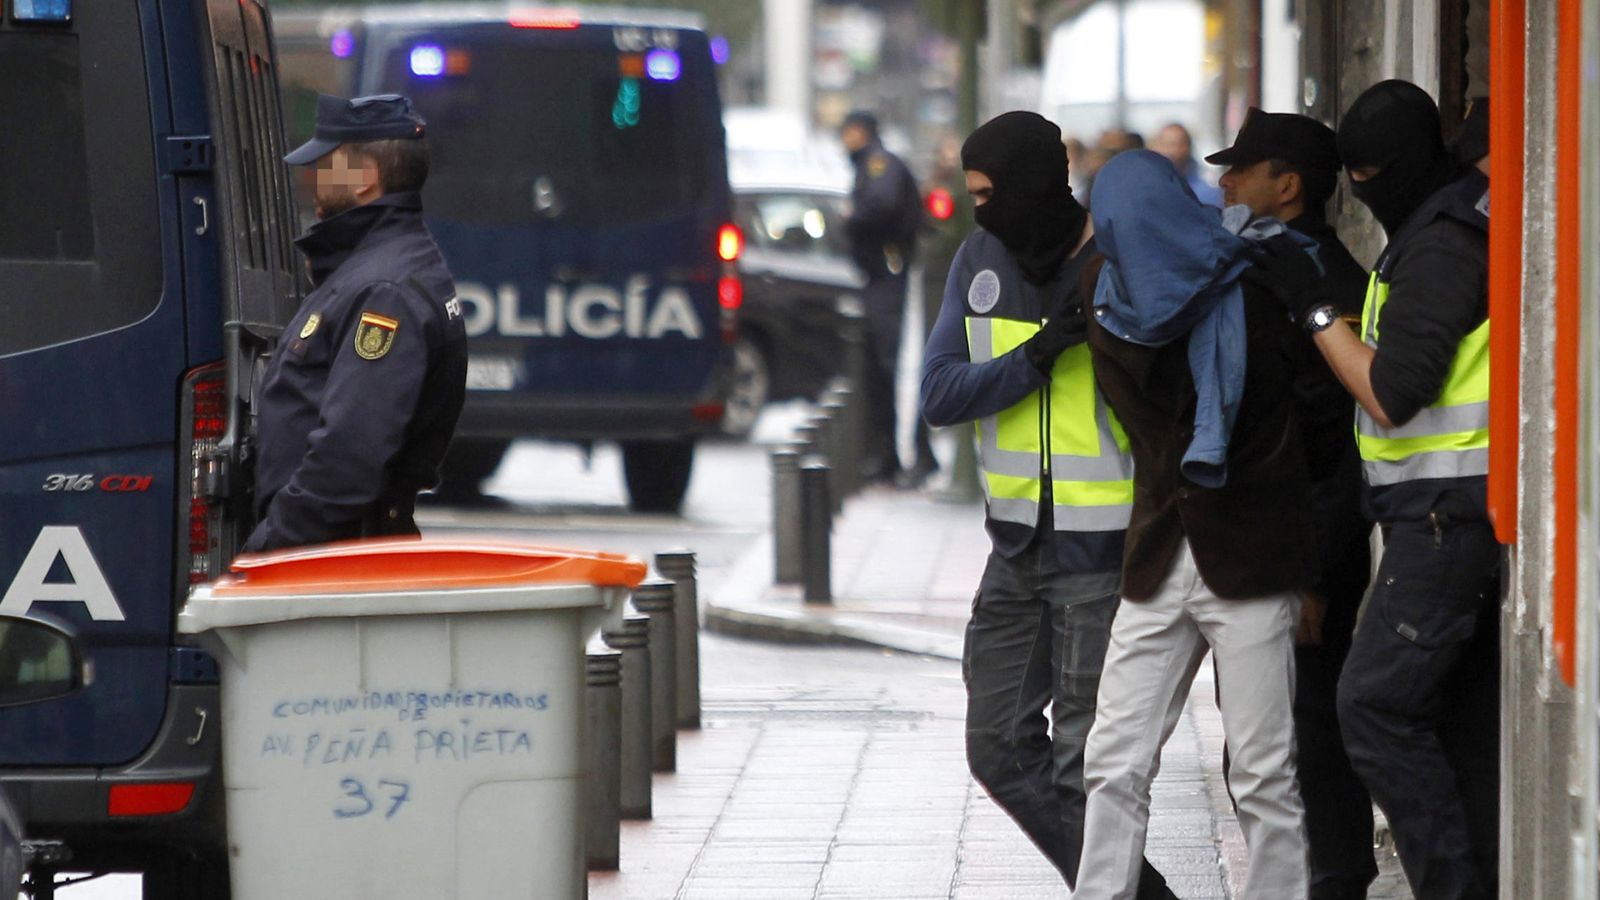 Foto: Dos efectivos de la Policía acompañan a una persona detenida en el madrileño barrio de Vallecas. (EFE)